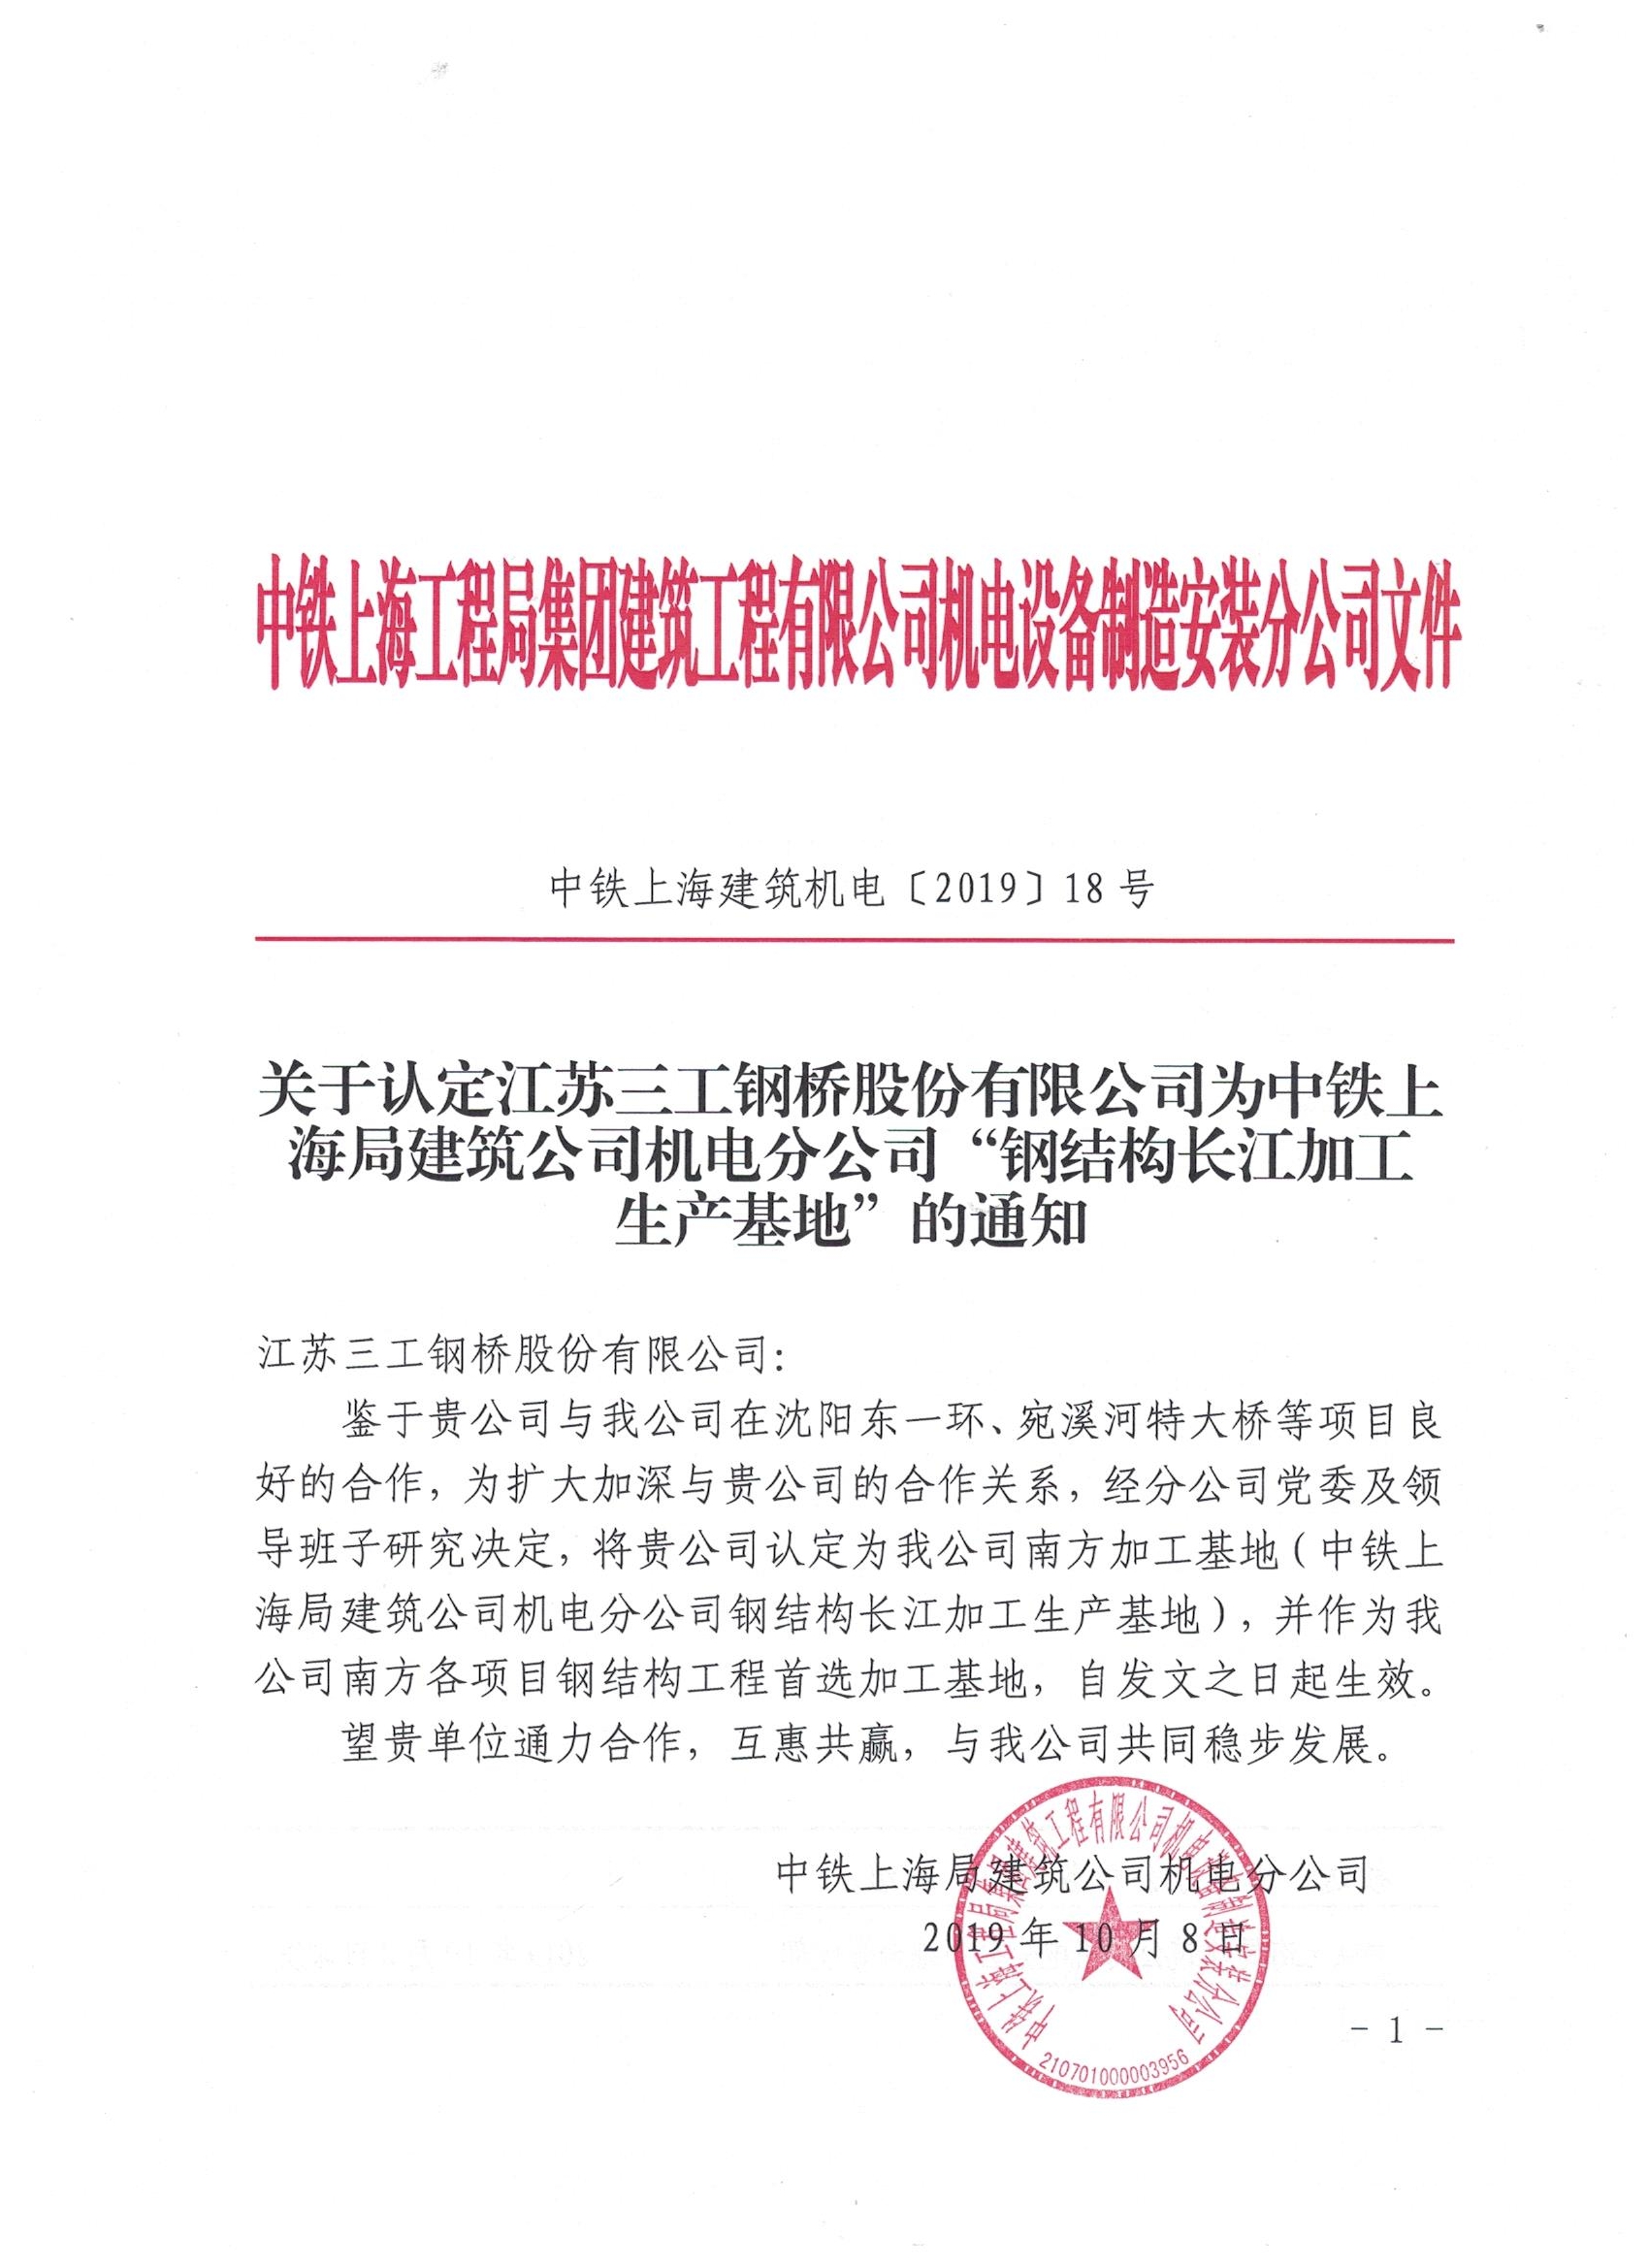 我公司正式成为上海工程局建筑公司机电分公司